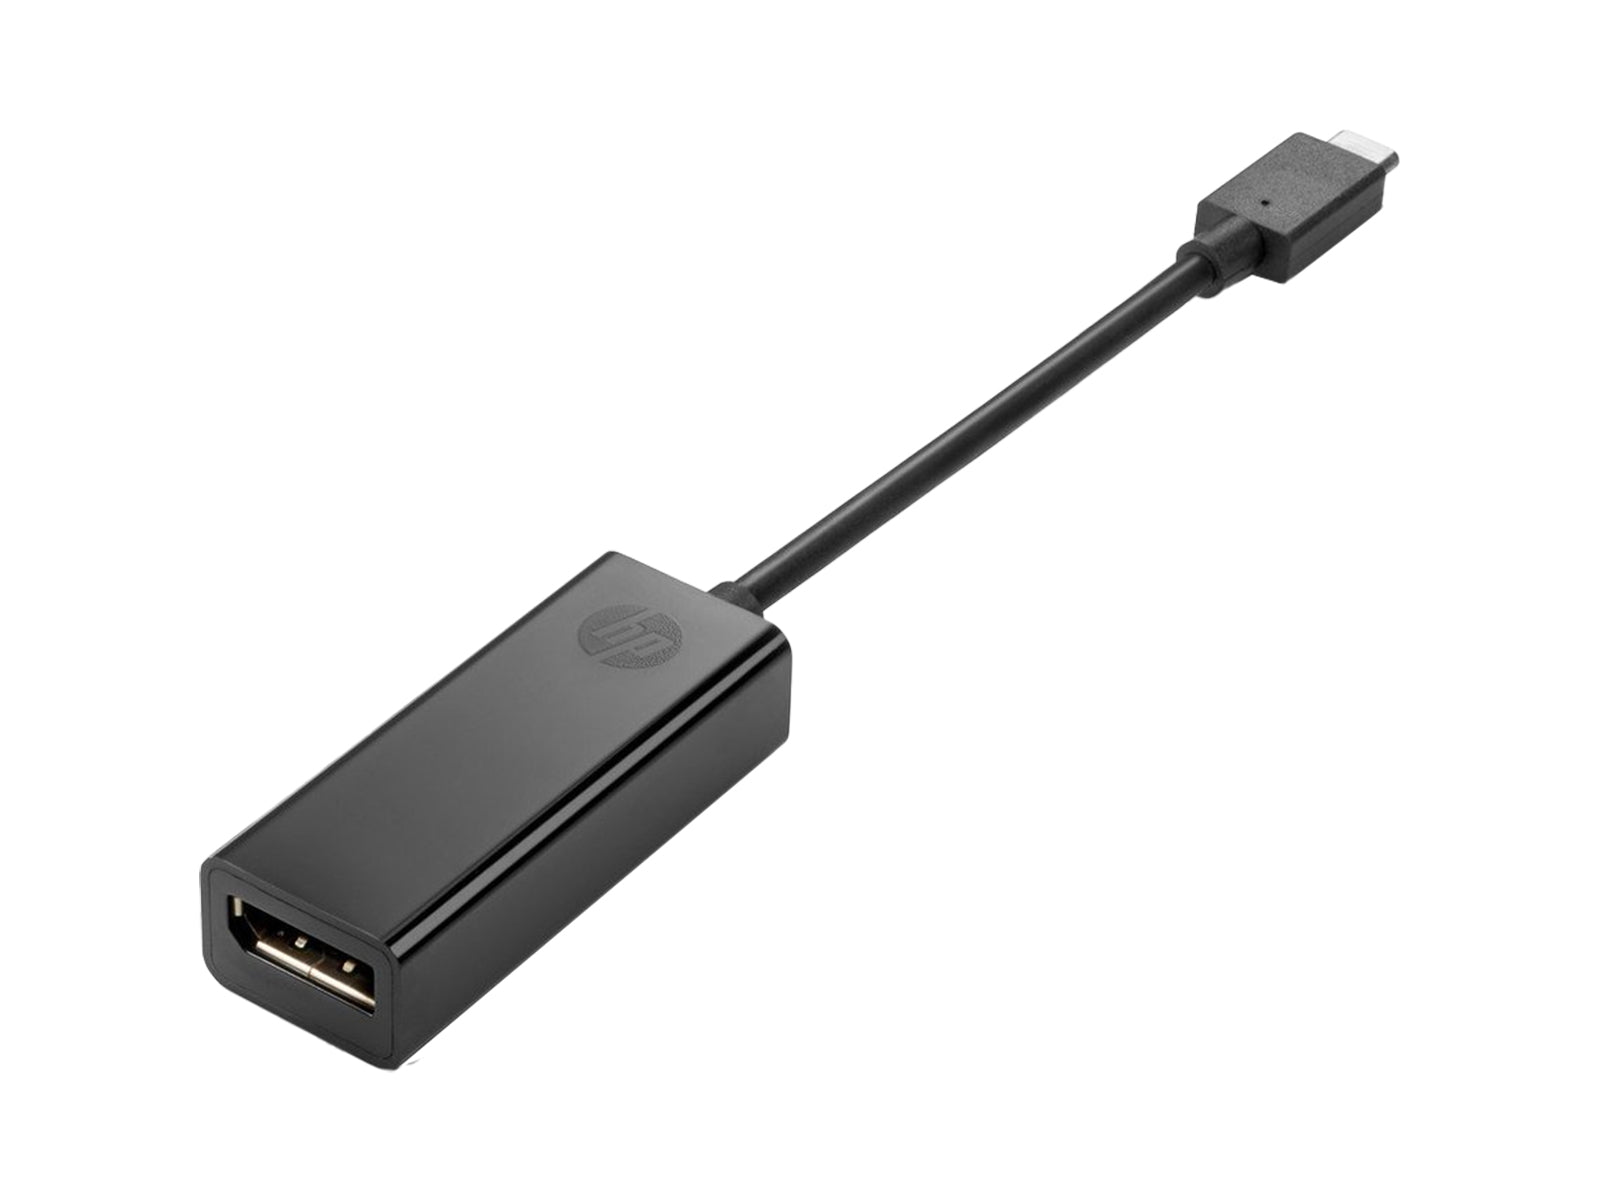 Convertidor de adaptador de señal de vídeo HP USB Type-C a DisplayPort (831119-001) Monitors.com